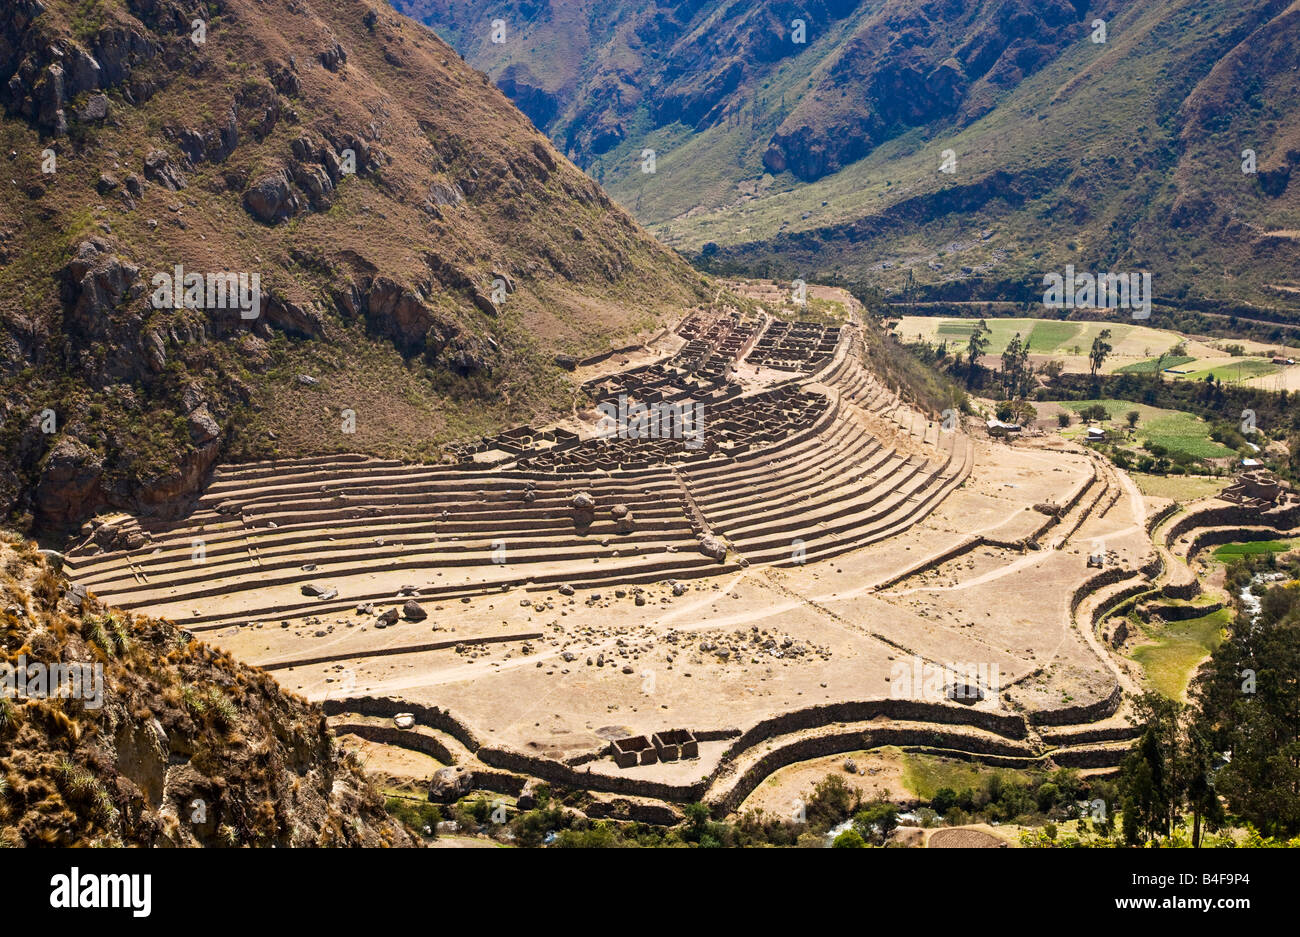 Blick auf die Inka-Ruine LLactapata oder Patallacta entnommen aus der Inka-Trail in den Anden Perus Stockfoto